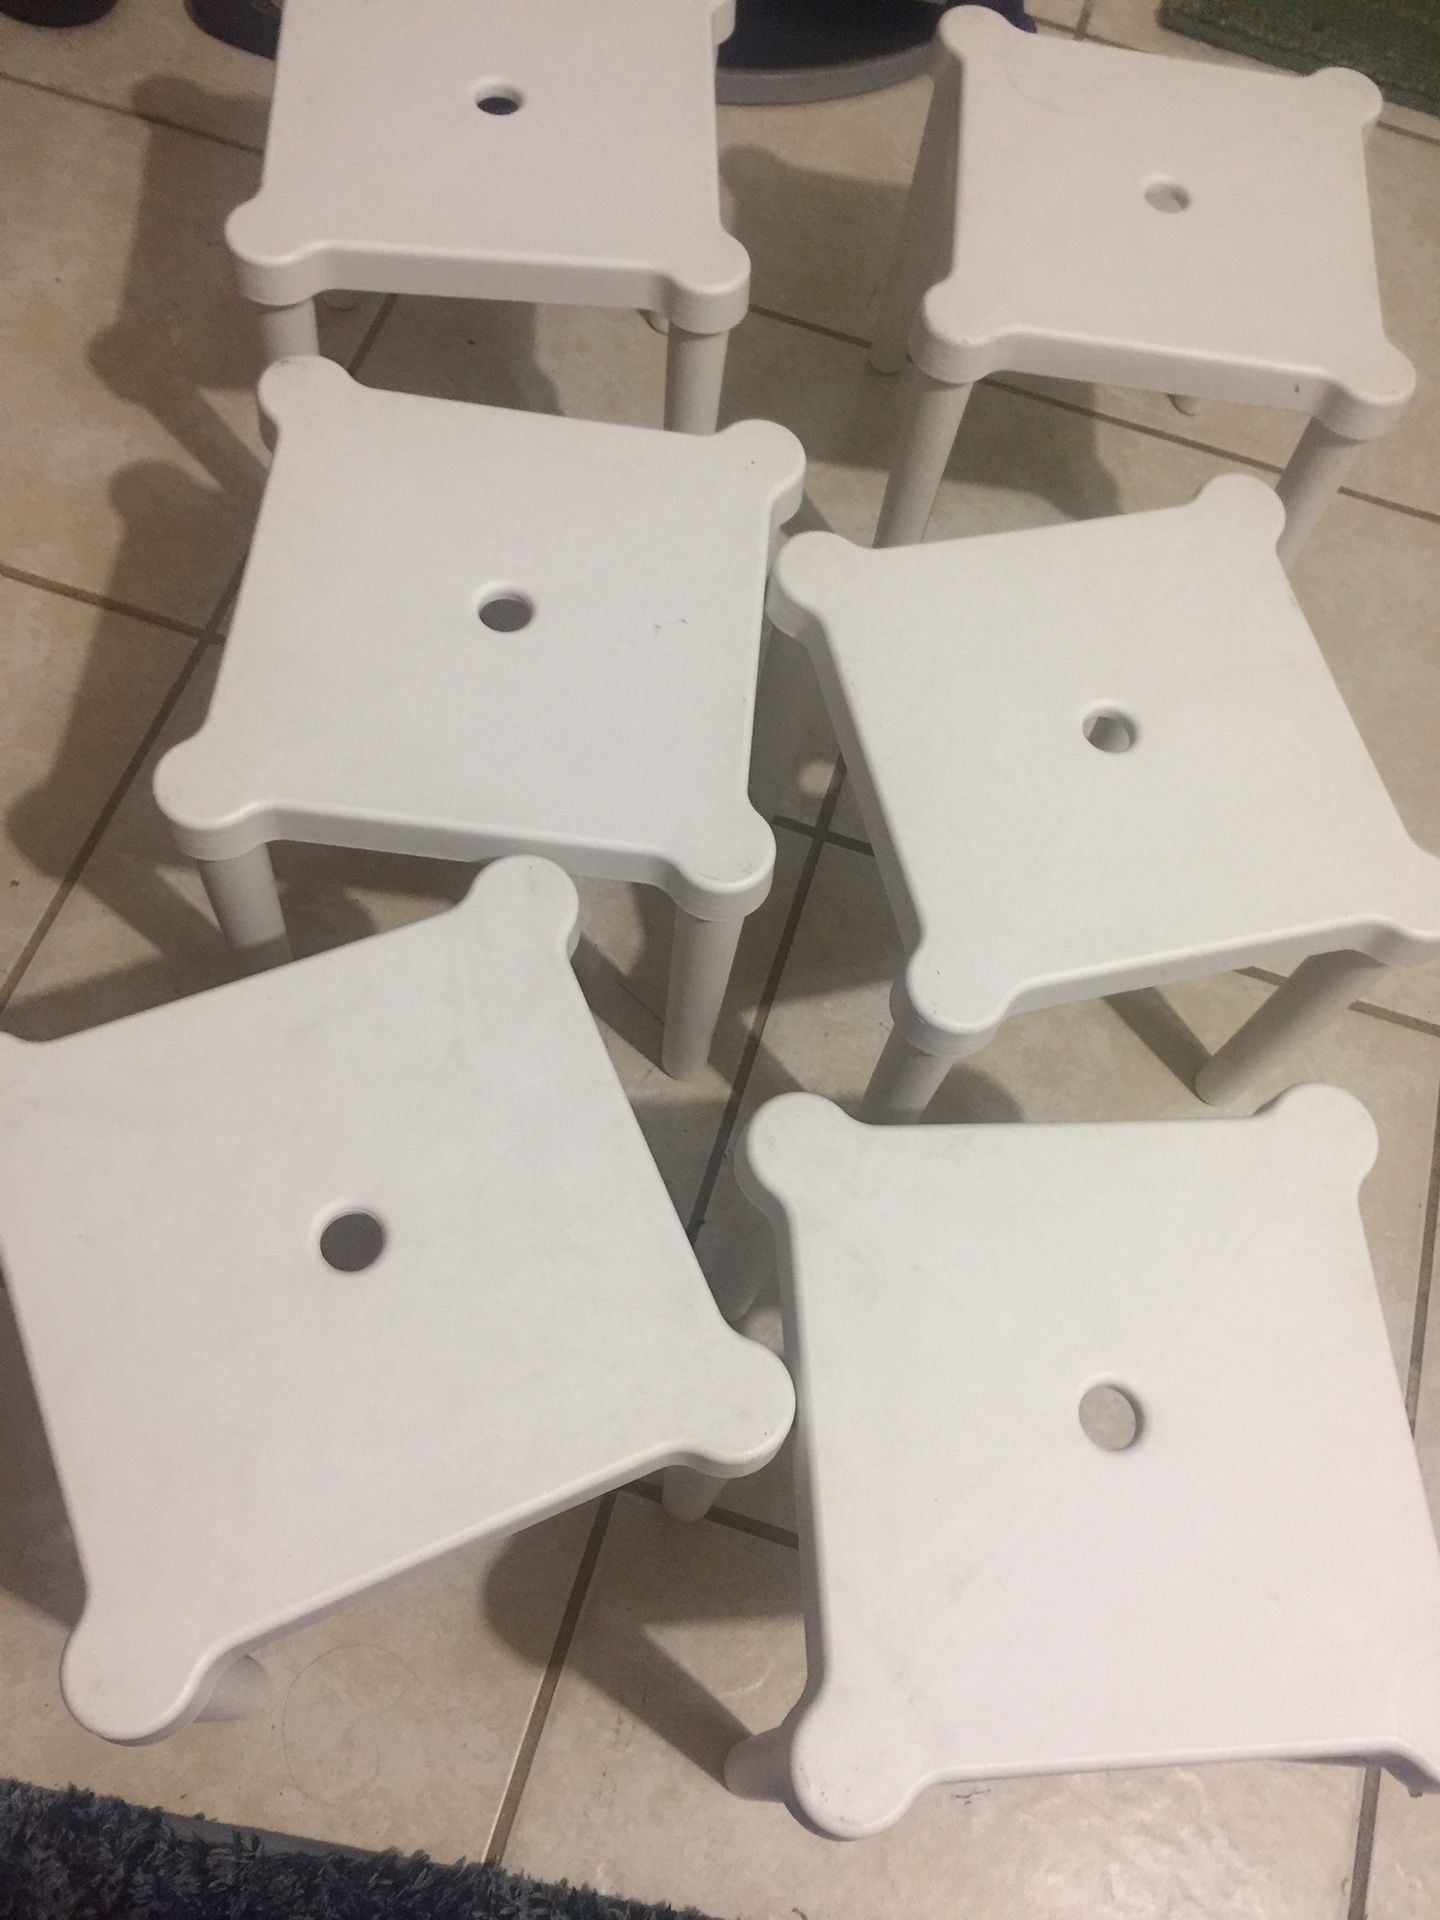 6 kid’s stools